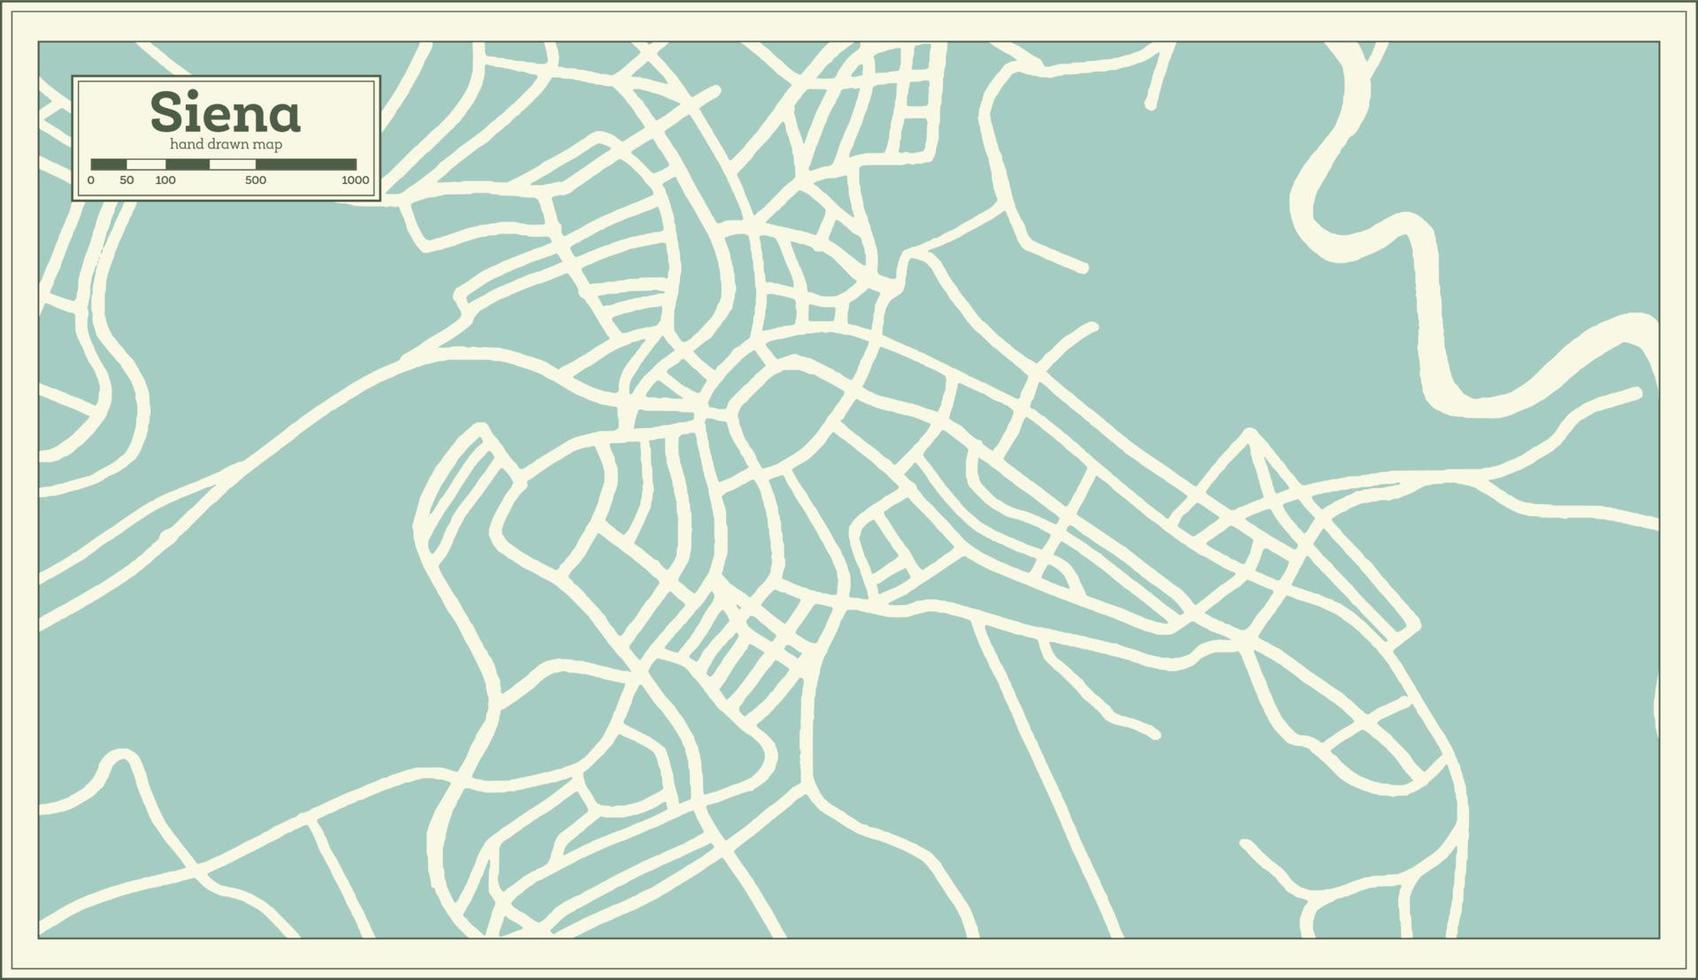 siena Italien stad Karta i retro stil. översikt Karta. vektor